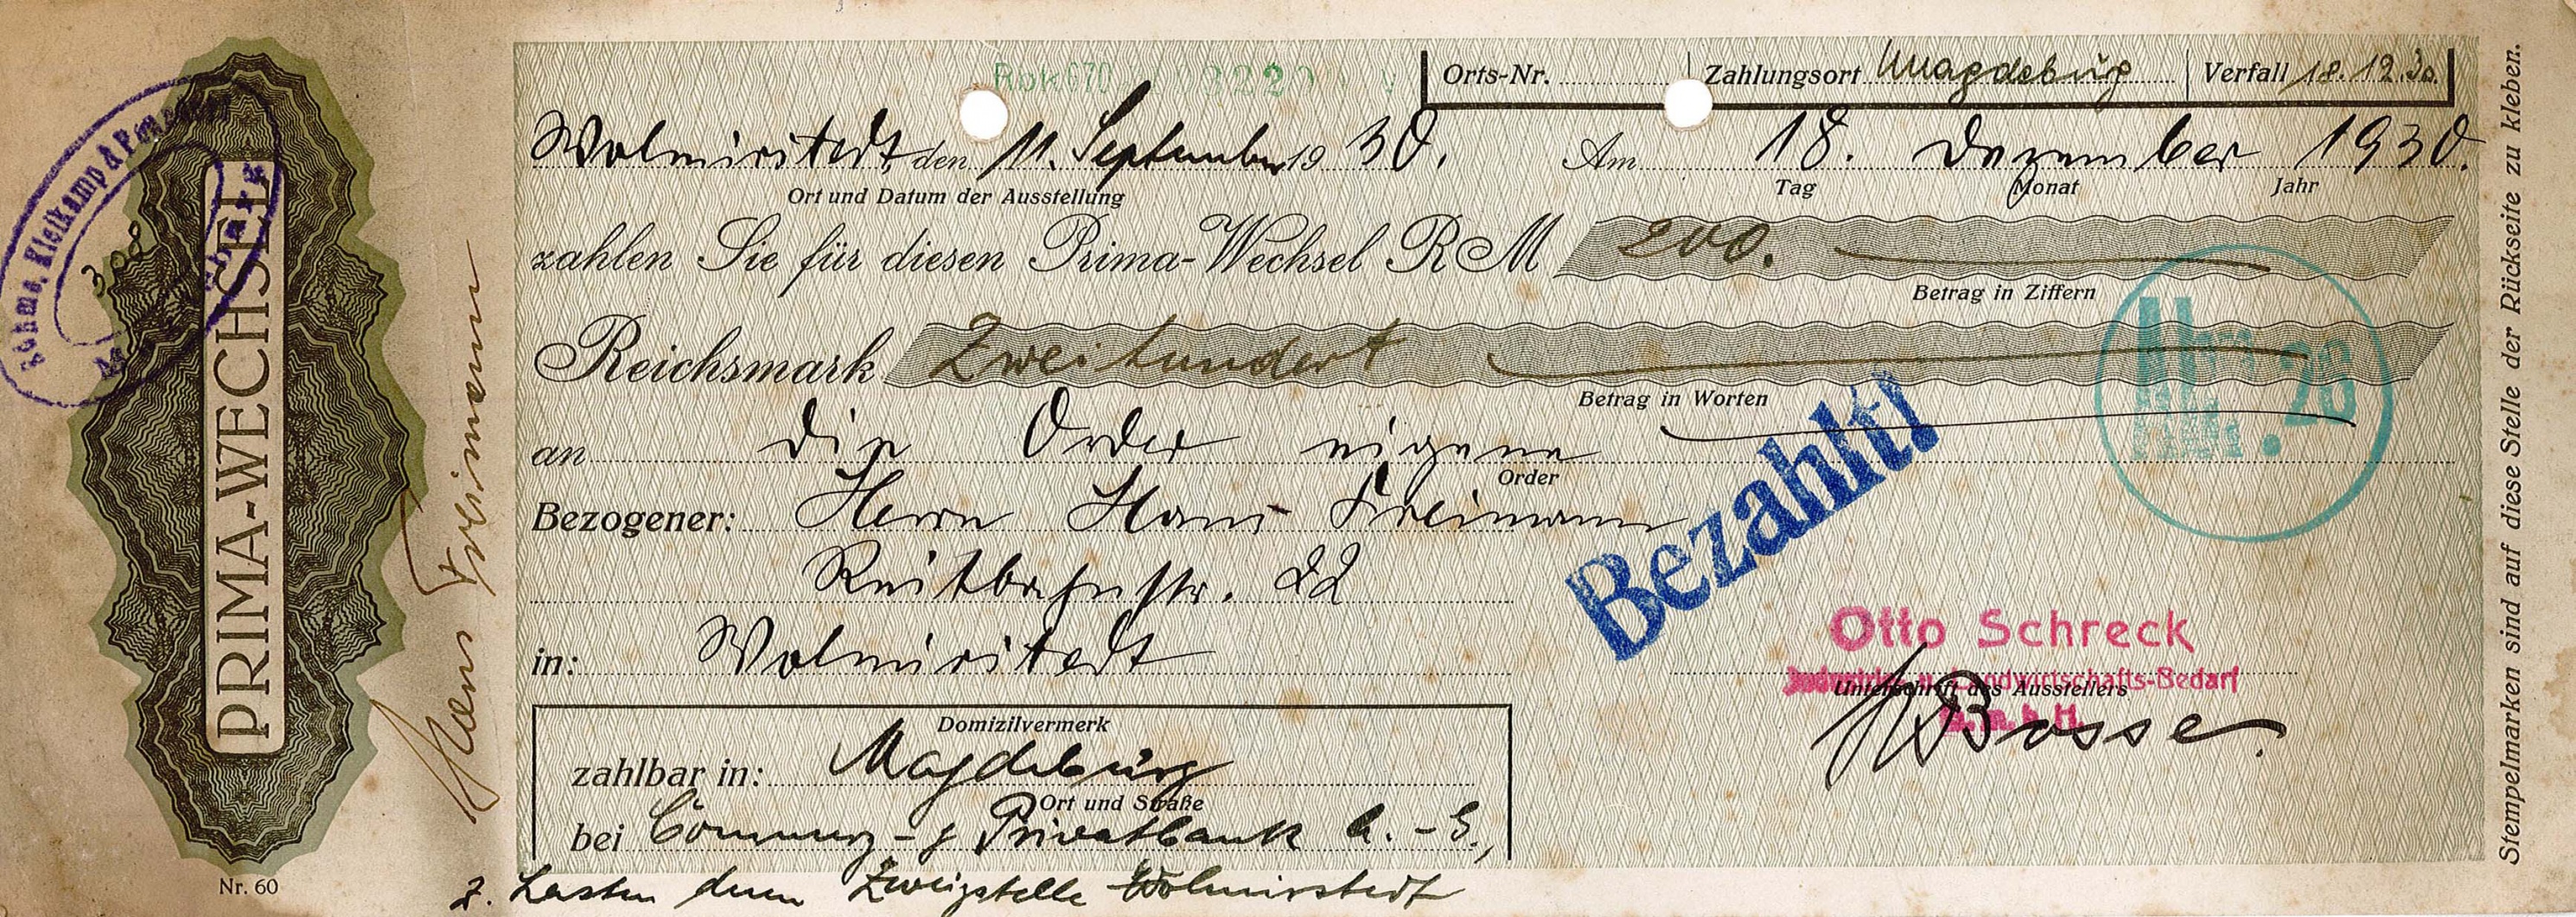 Prima-Wechsel von Otto Schreck für Hans Freimann, 18. Dezember 1930 (Museum Wolmirstedt RR-F)